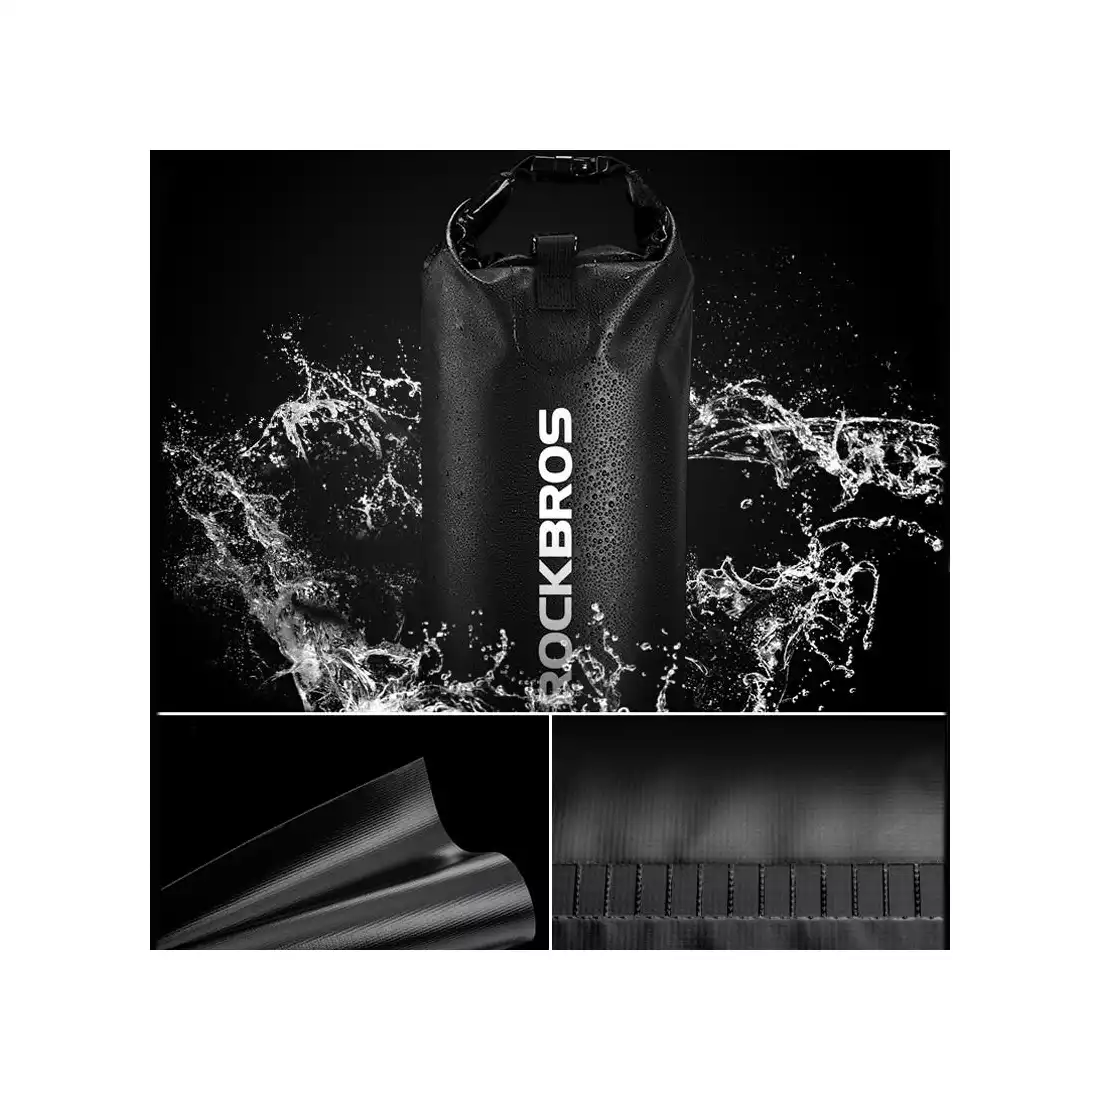 Rockbros wodoodporny plecak/worek 5L, czarny ST-003BK